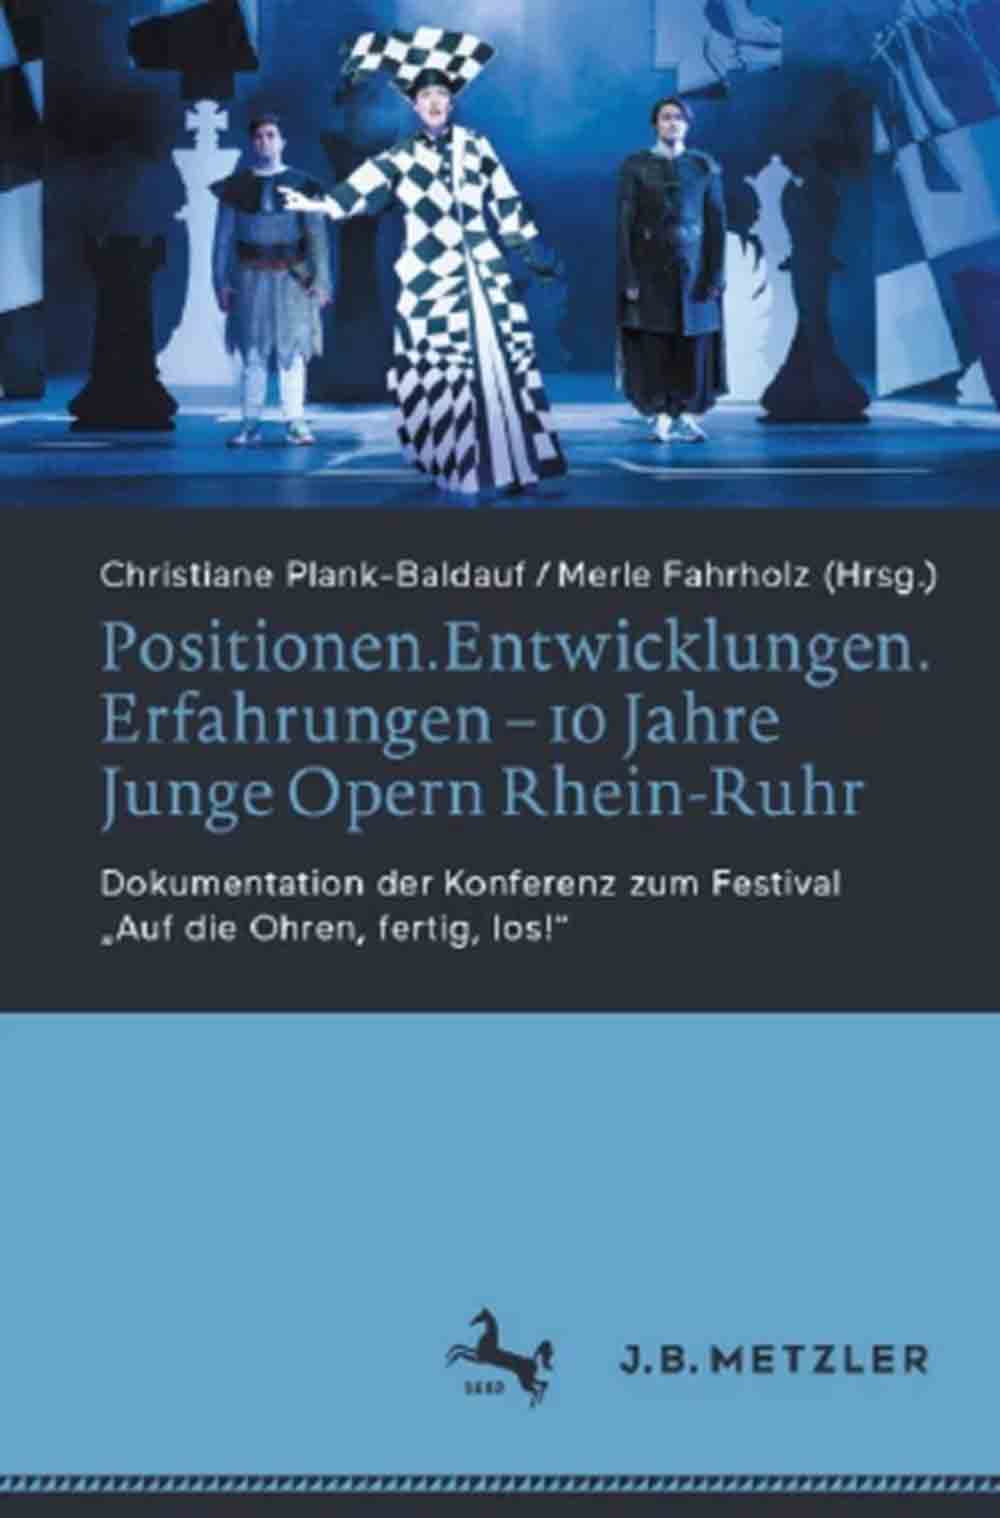 Theater und Philharmonie Essen, Festschrift zum Jubiläum »10 Jahre Junge #Opern #Rhein #Ruhr«